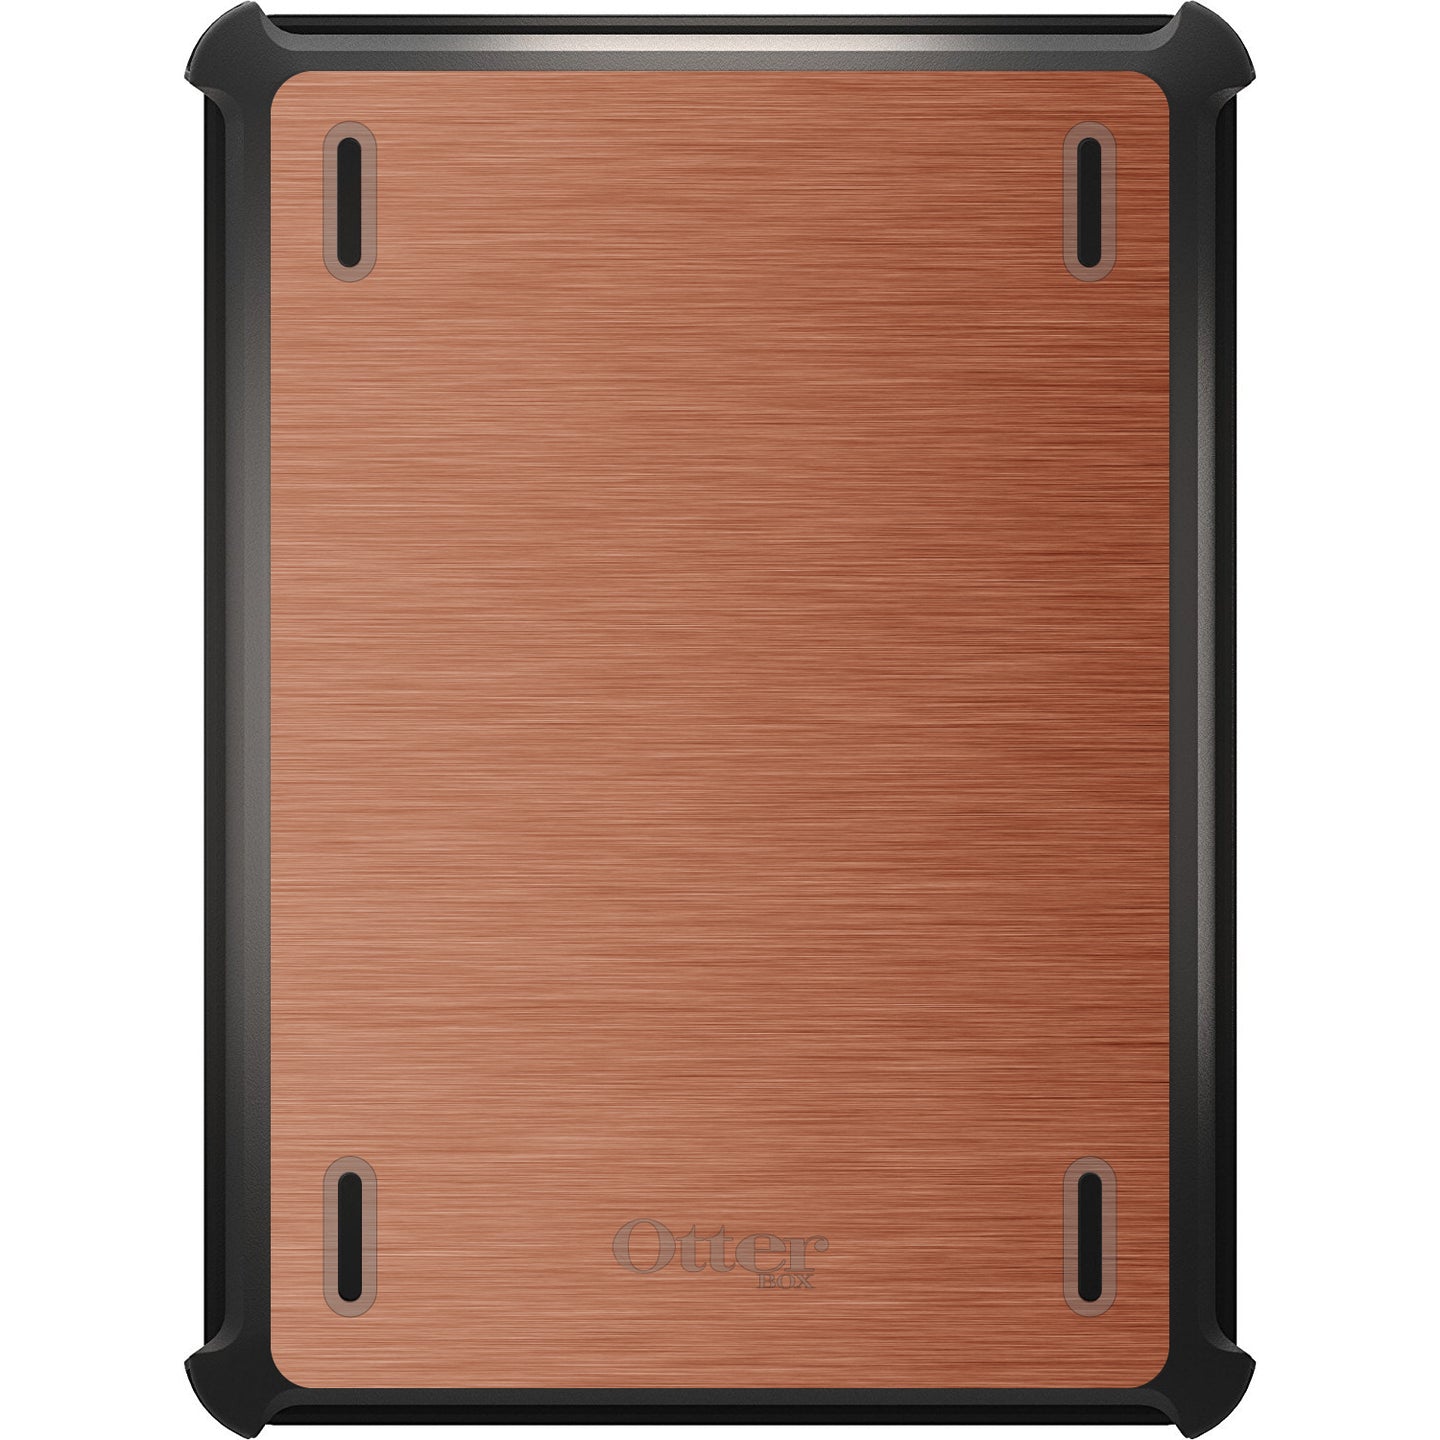 DistinctInk™ OtterBox Defender Series Case for Apple iPad / iPad Pro / iPad Air / iPad Mini - Orange Stainless Steel Print